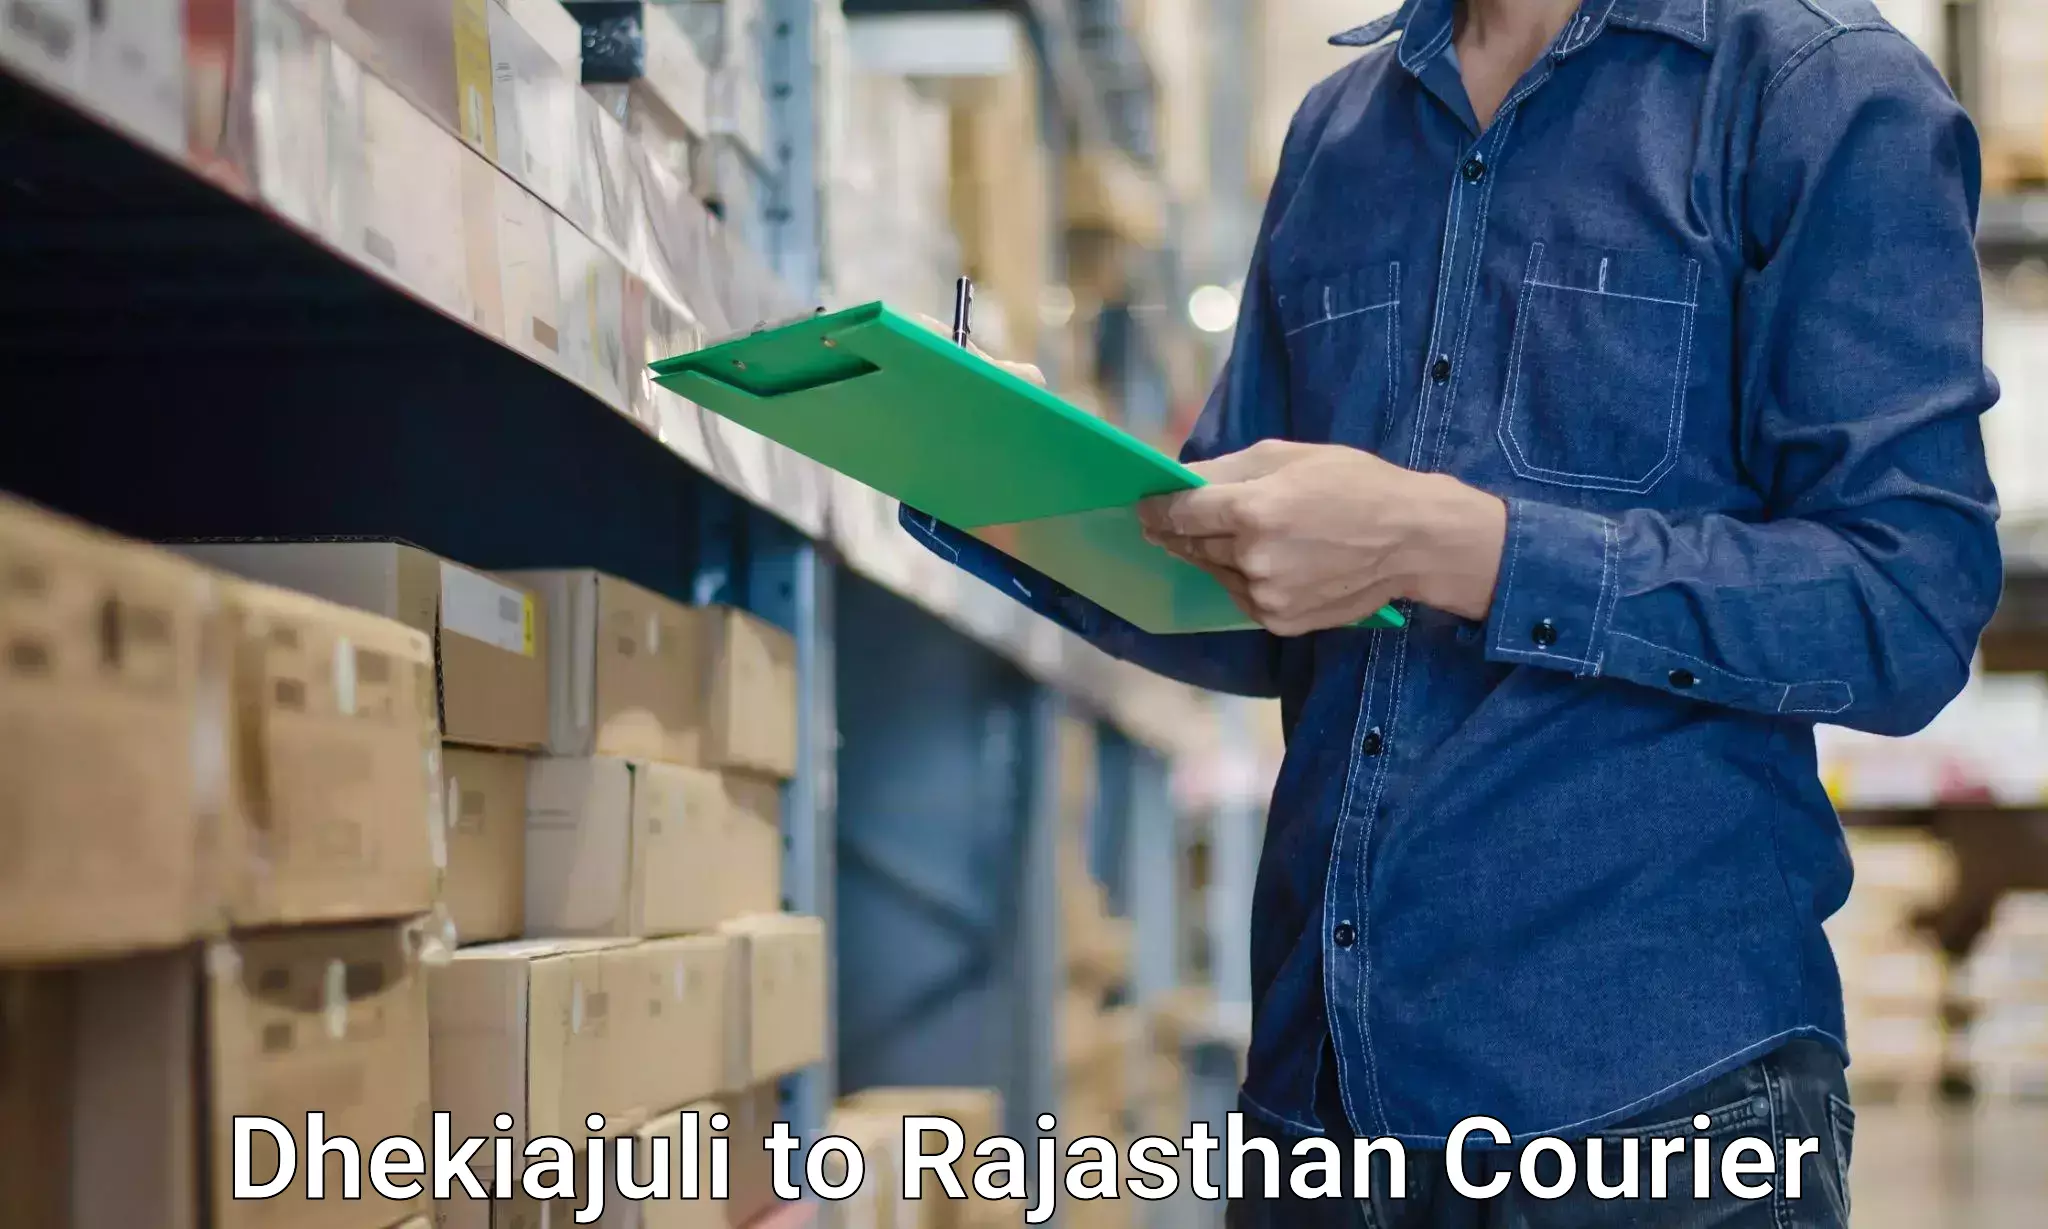 Professional packing services Dhekiajuli to Rajgarh Rajasthan